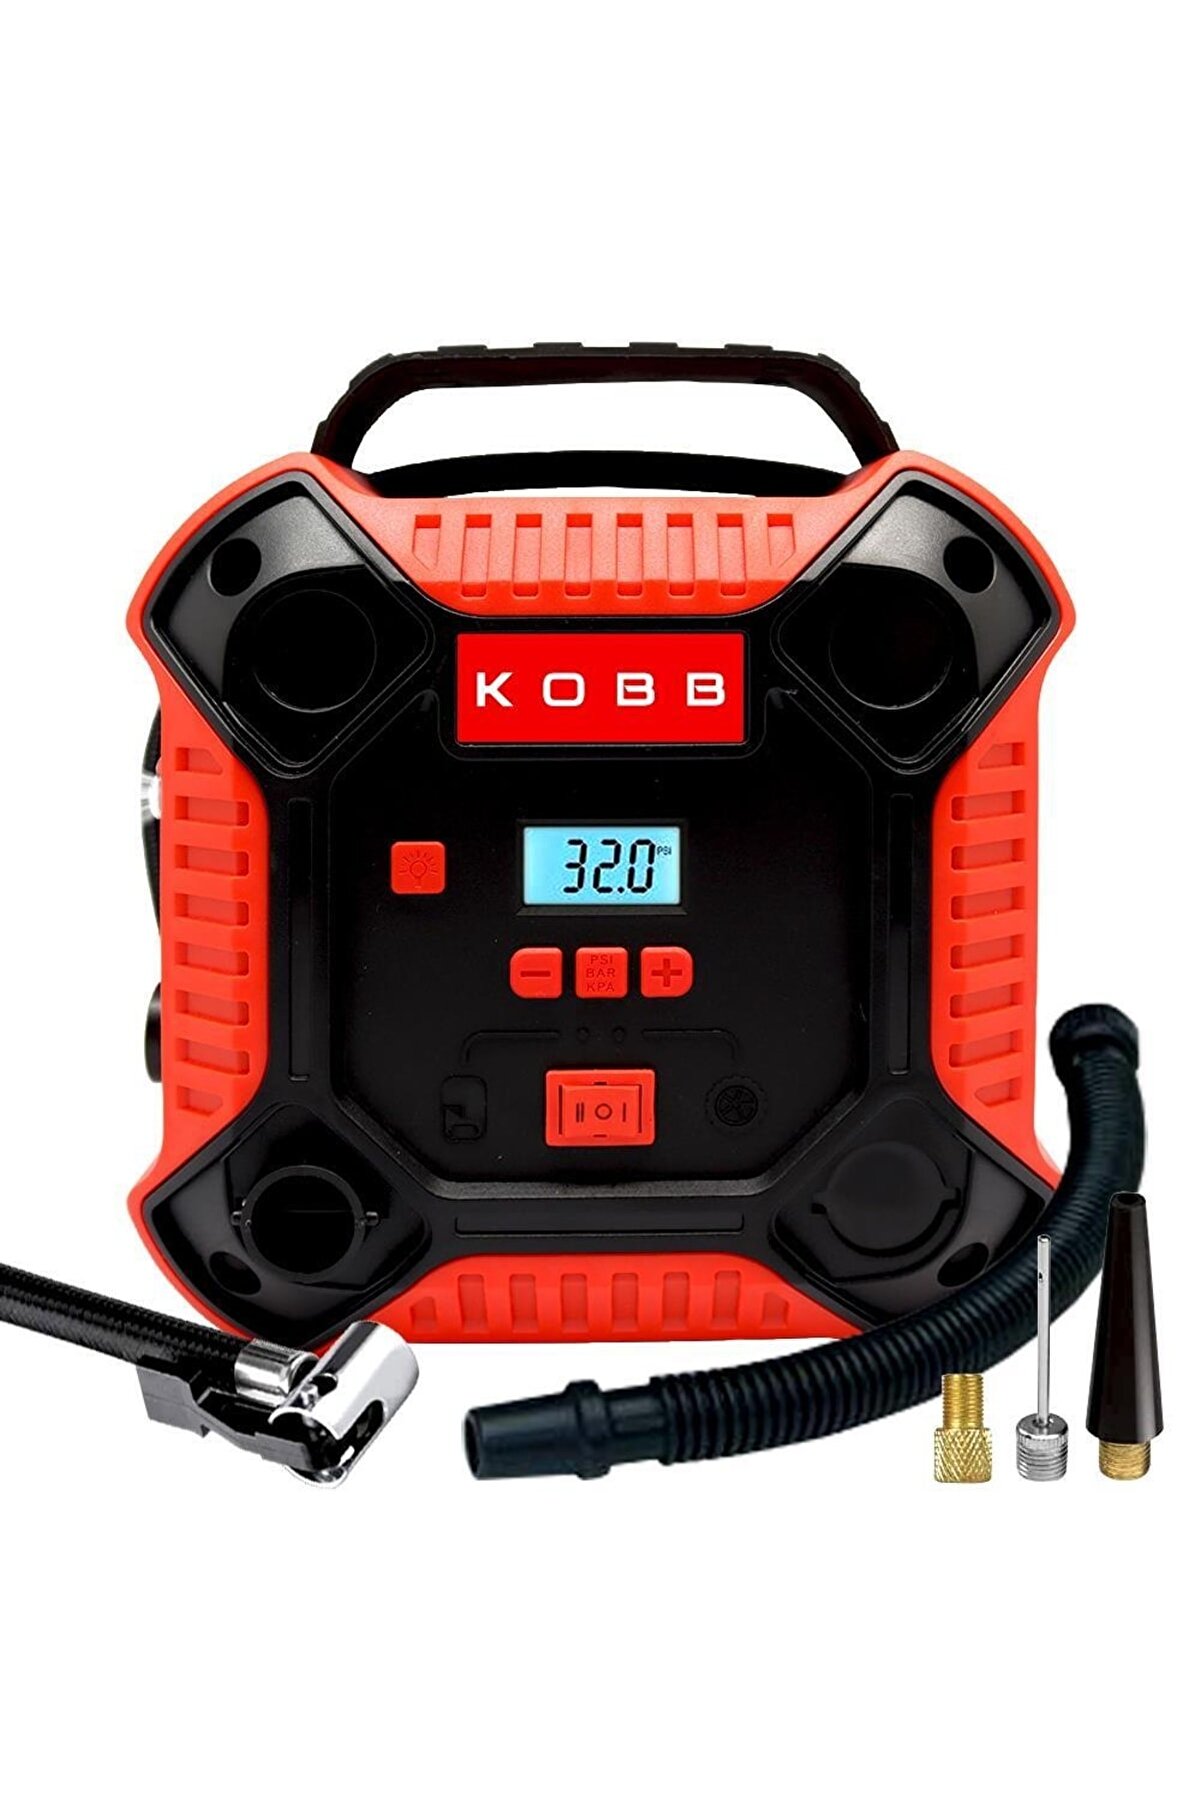 KOBB Kb250 12volt 160 Psı Dijital Basınç Göstergeli Lastik & Yatak Şişirme Pompası, Kırmızı/siyah